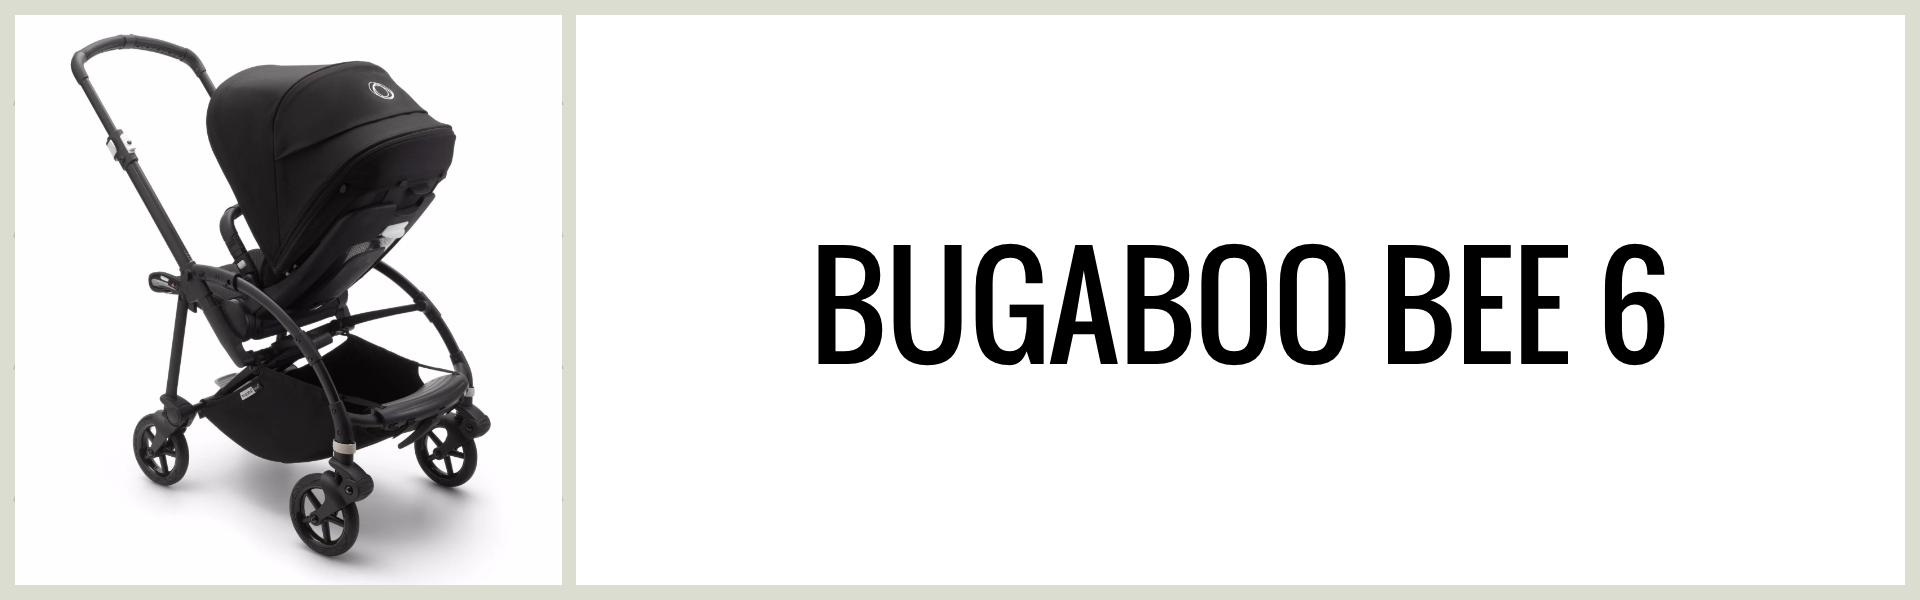 Omdöme: Hur är Bugaboo Bee 6 som resevagn?